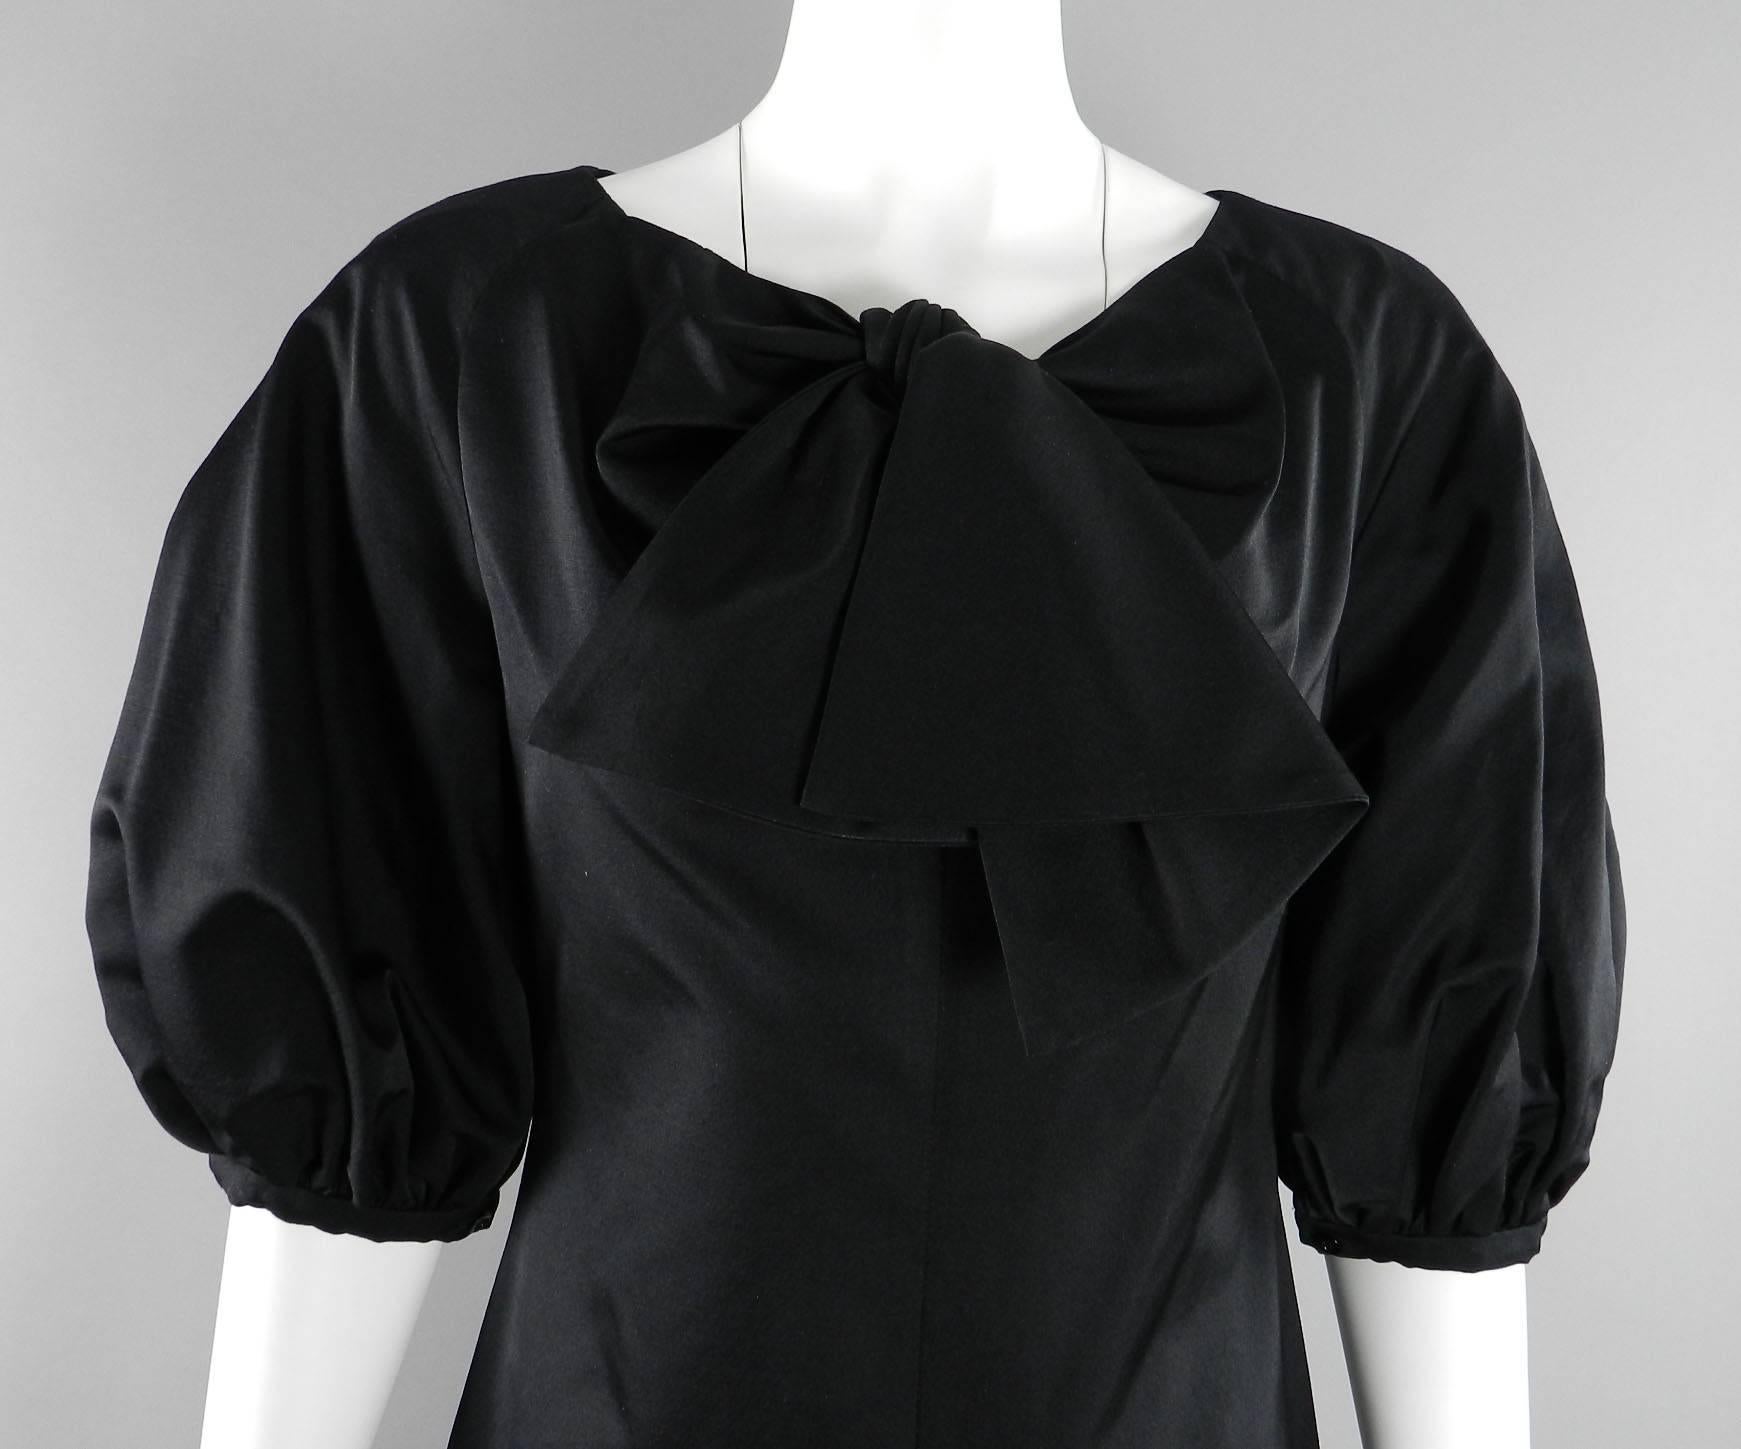 Giambattista Valli Black Satin Cocktail Dress with Bow 2